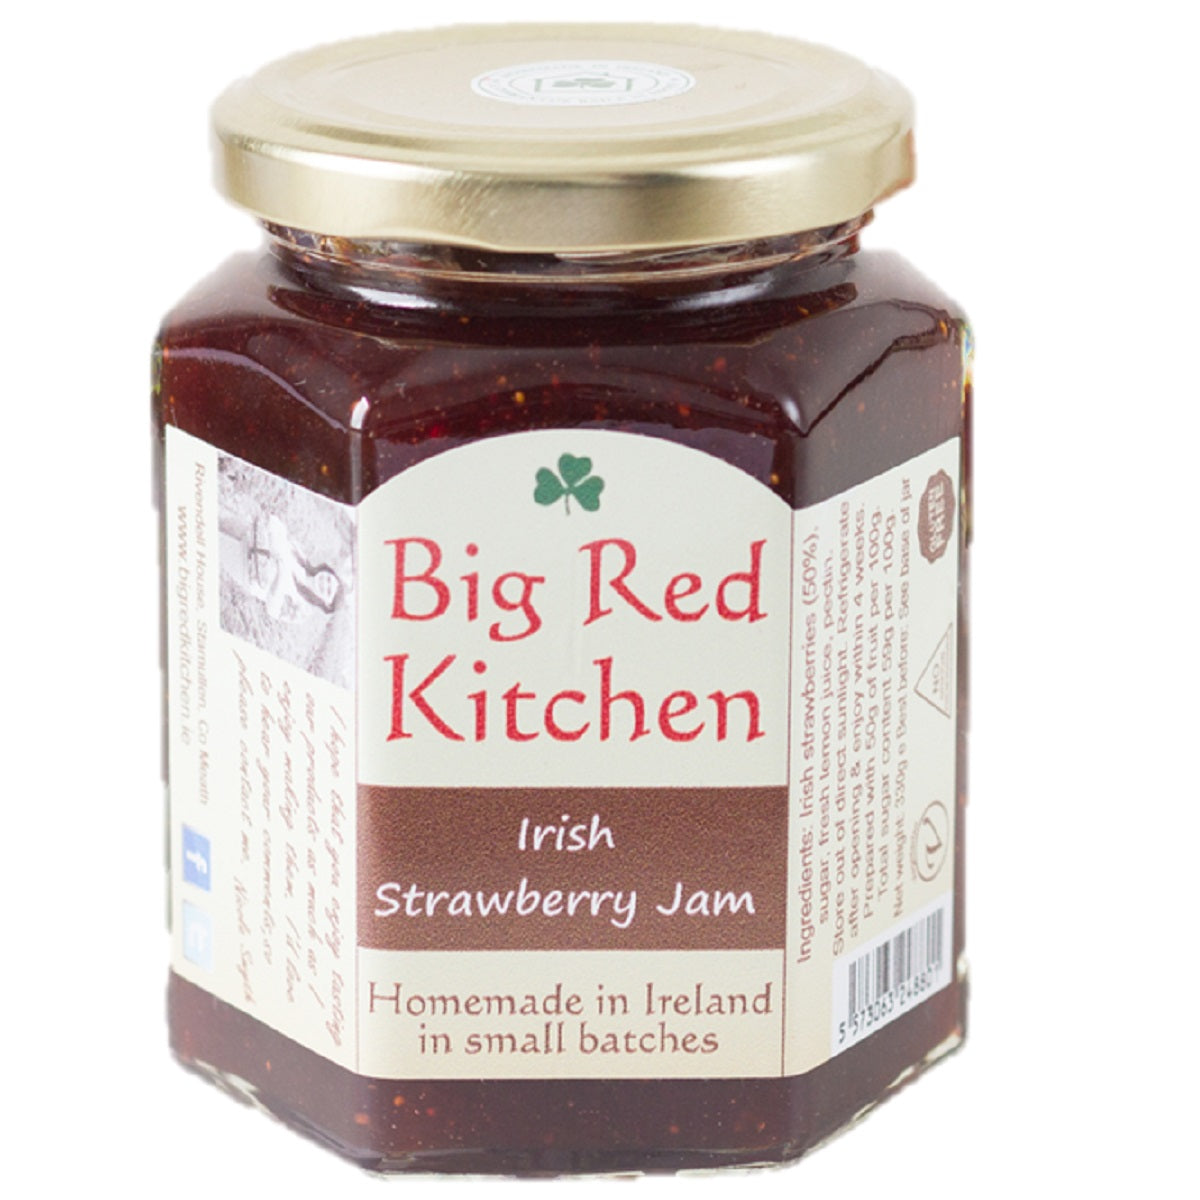 Big Red Kitchen Irish Strawberry Jam 130g